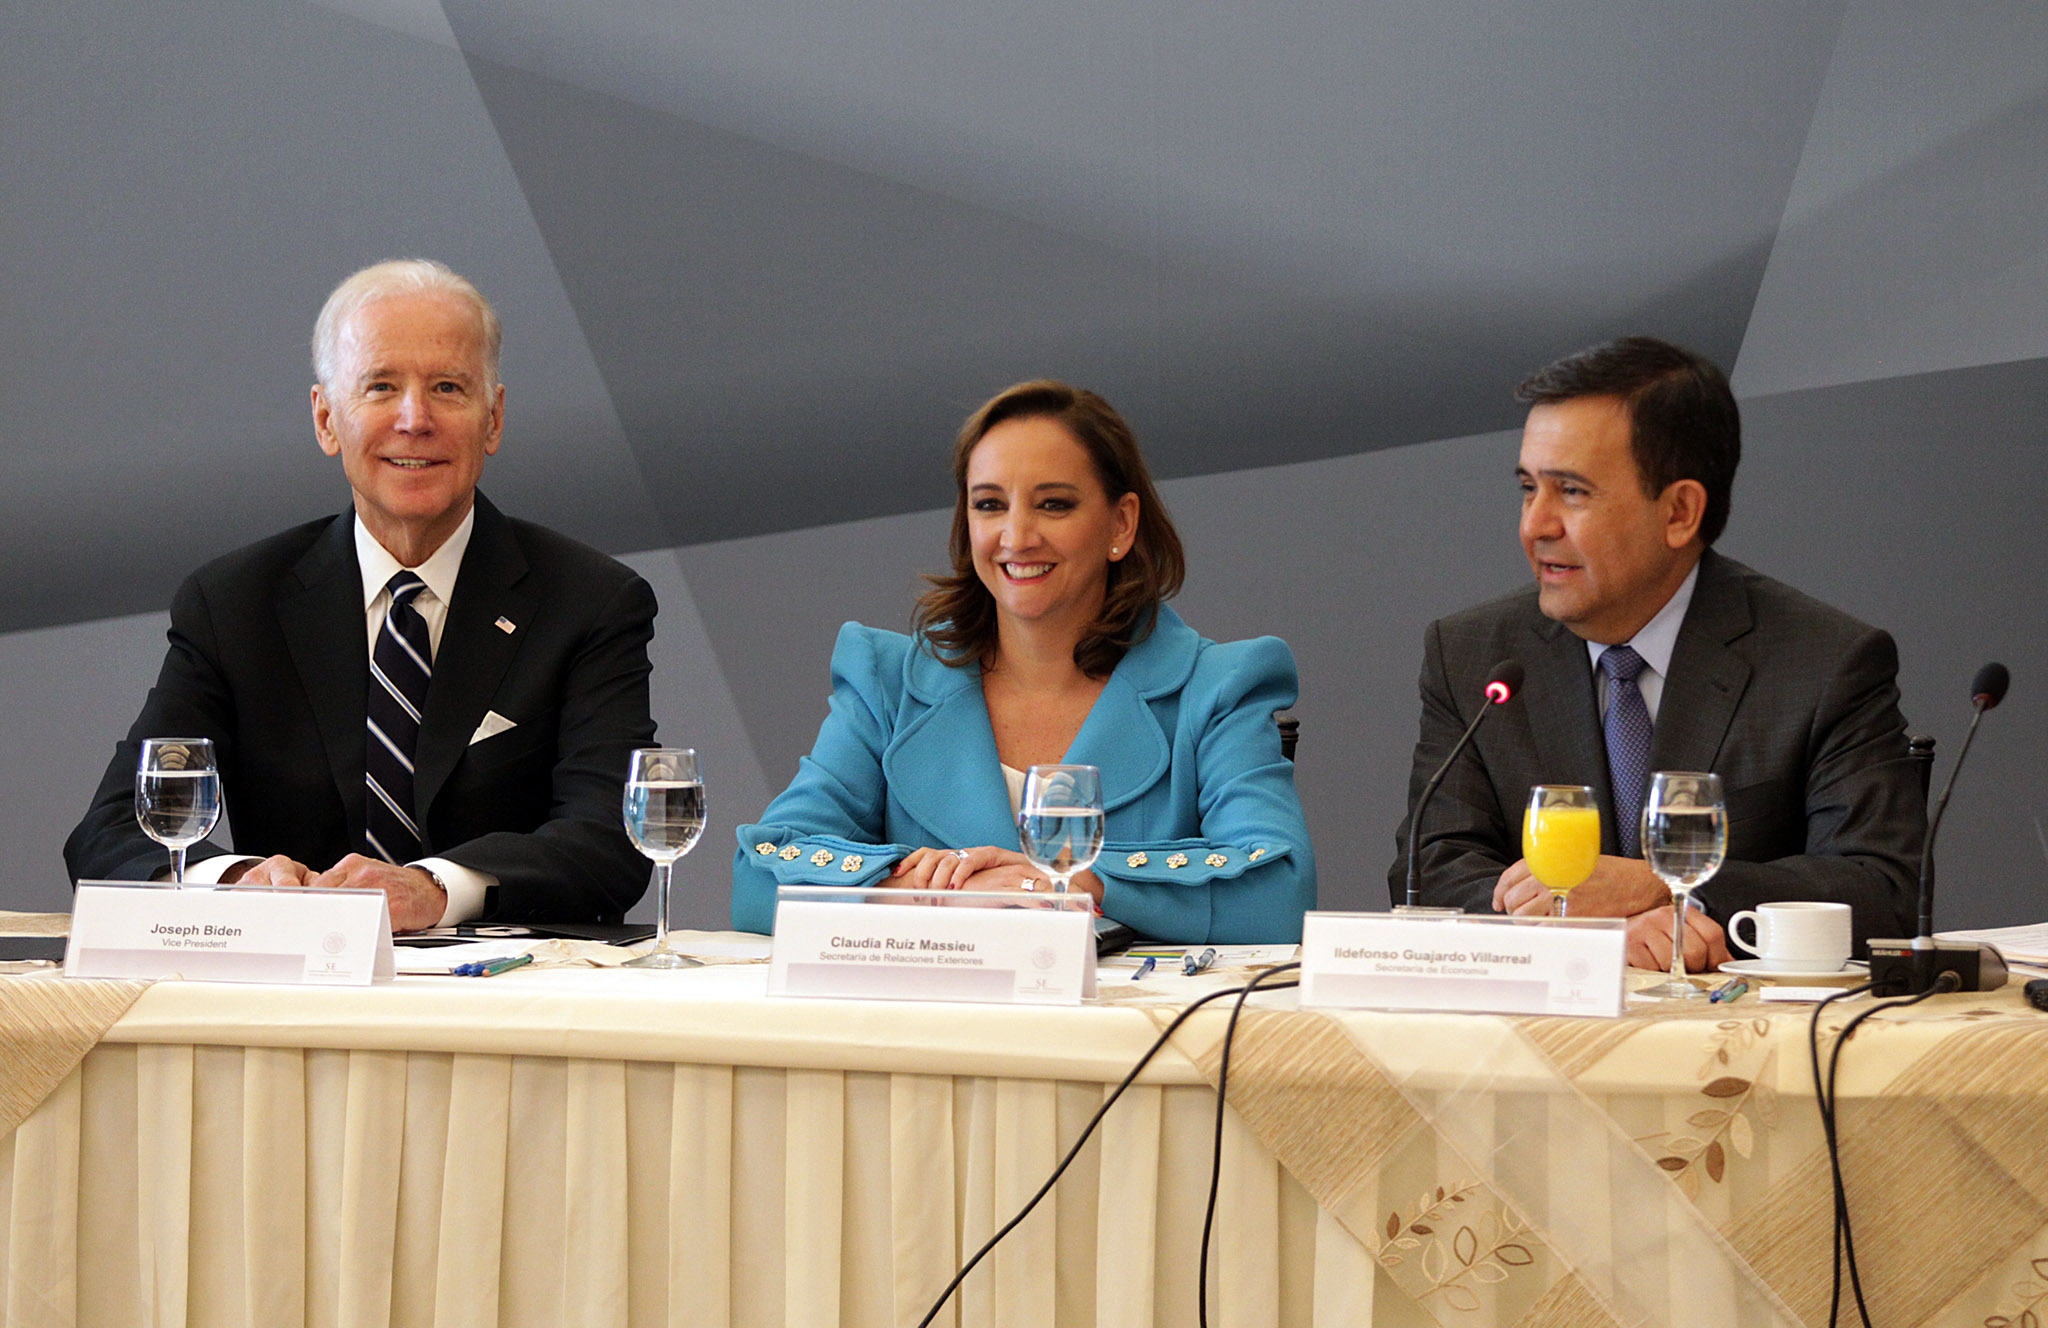 FOTO 2 Vicepresidente  de Estados Unidos  Joseph Biden  Canciller Claudia Ruiz Massieu y el Secretario Ildefonso Guajardojpg